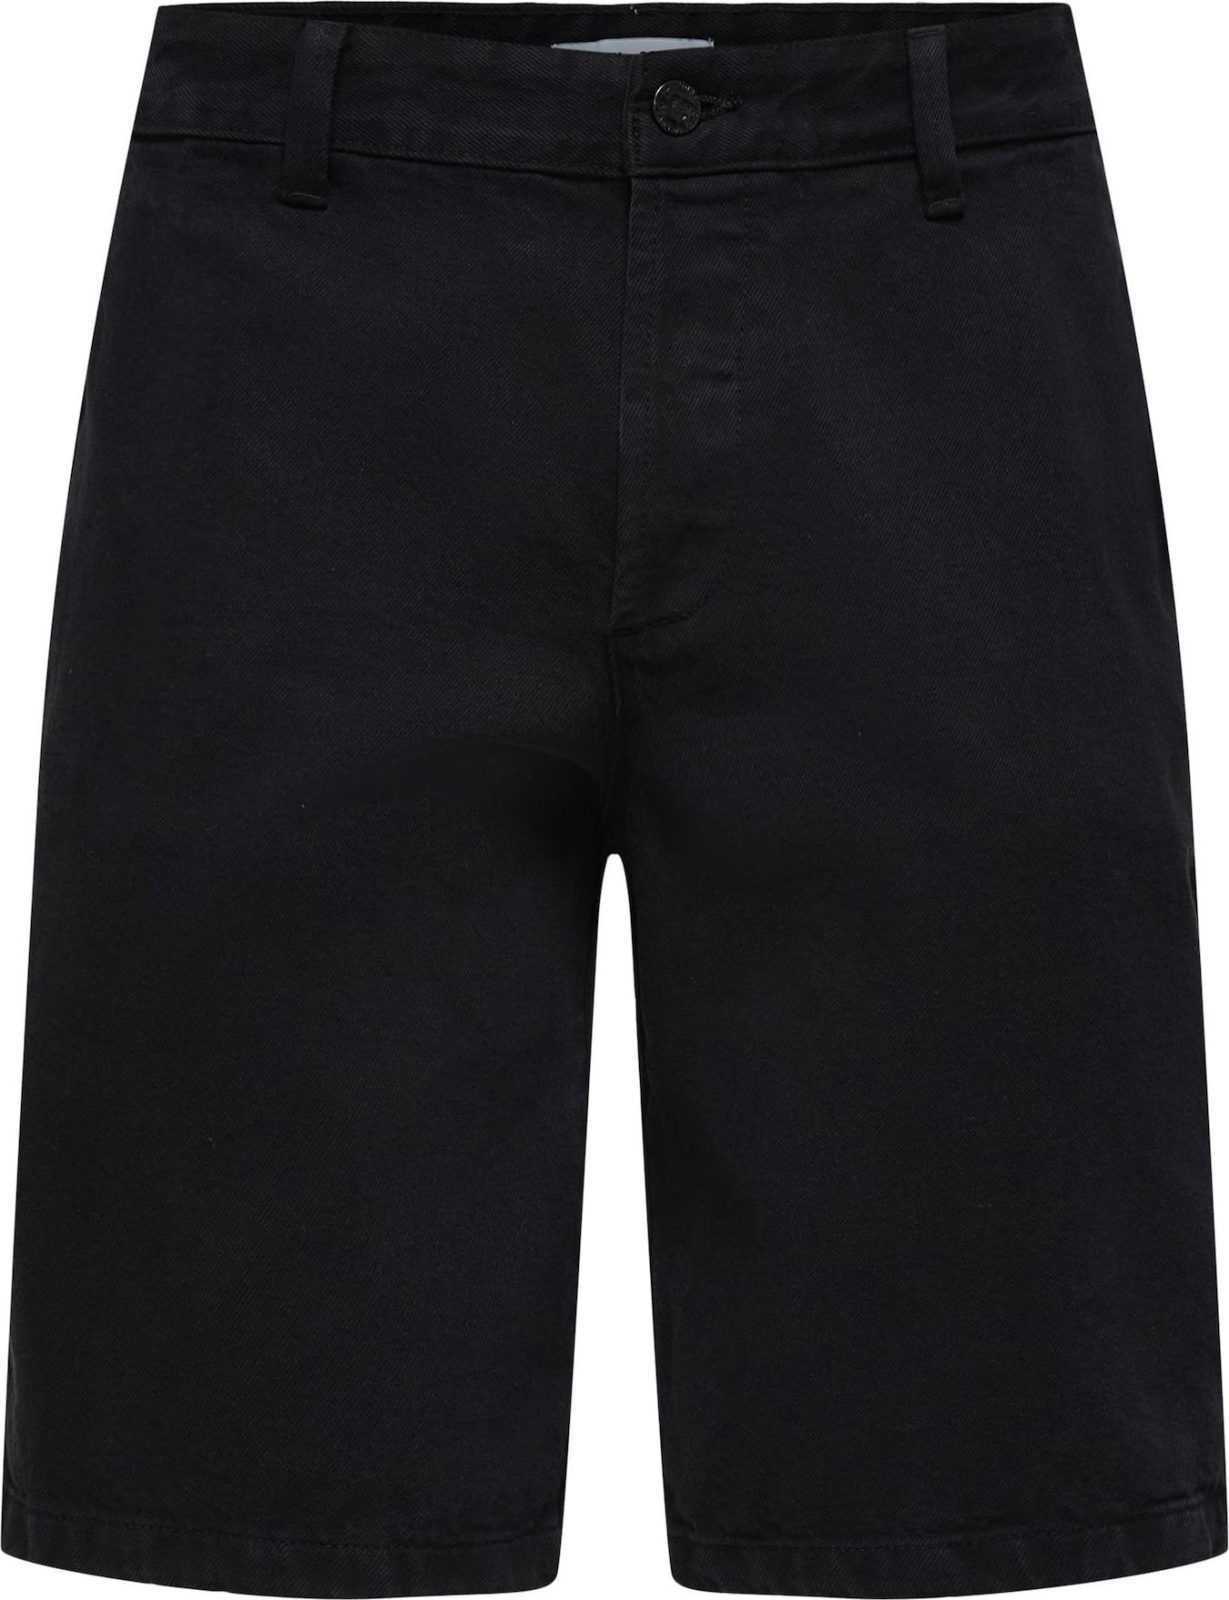 Only & Sons Chino kalhoty 'Avi' černá